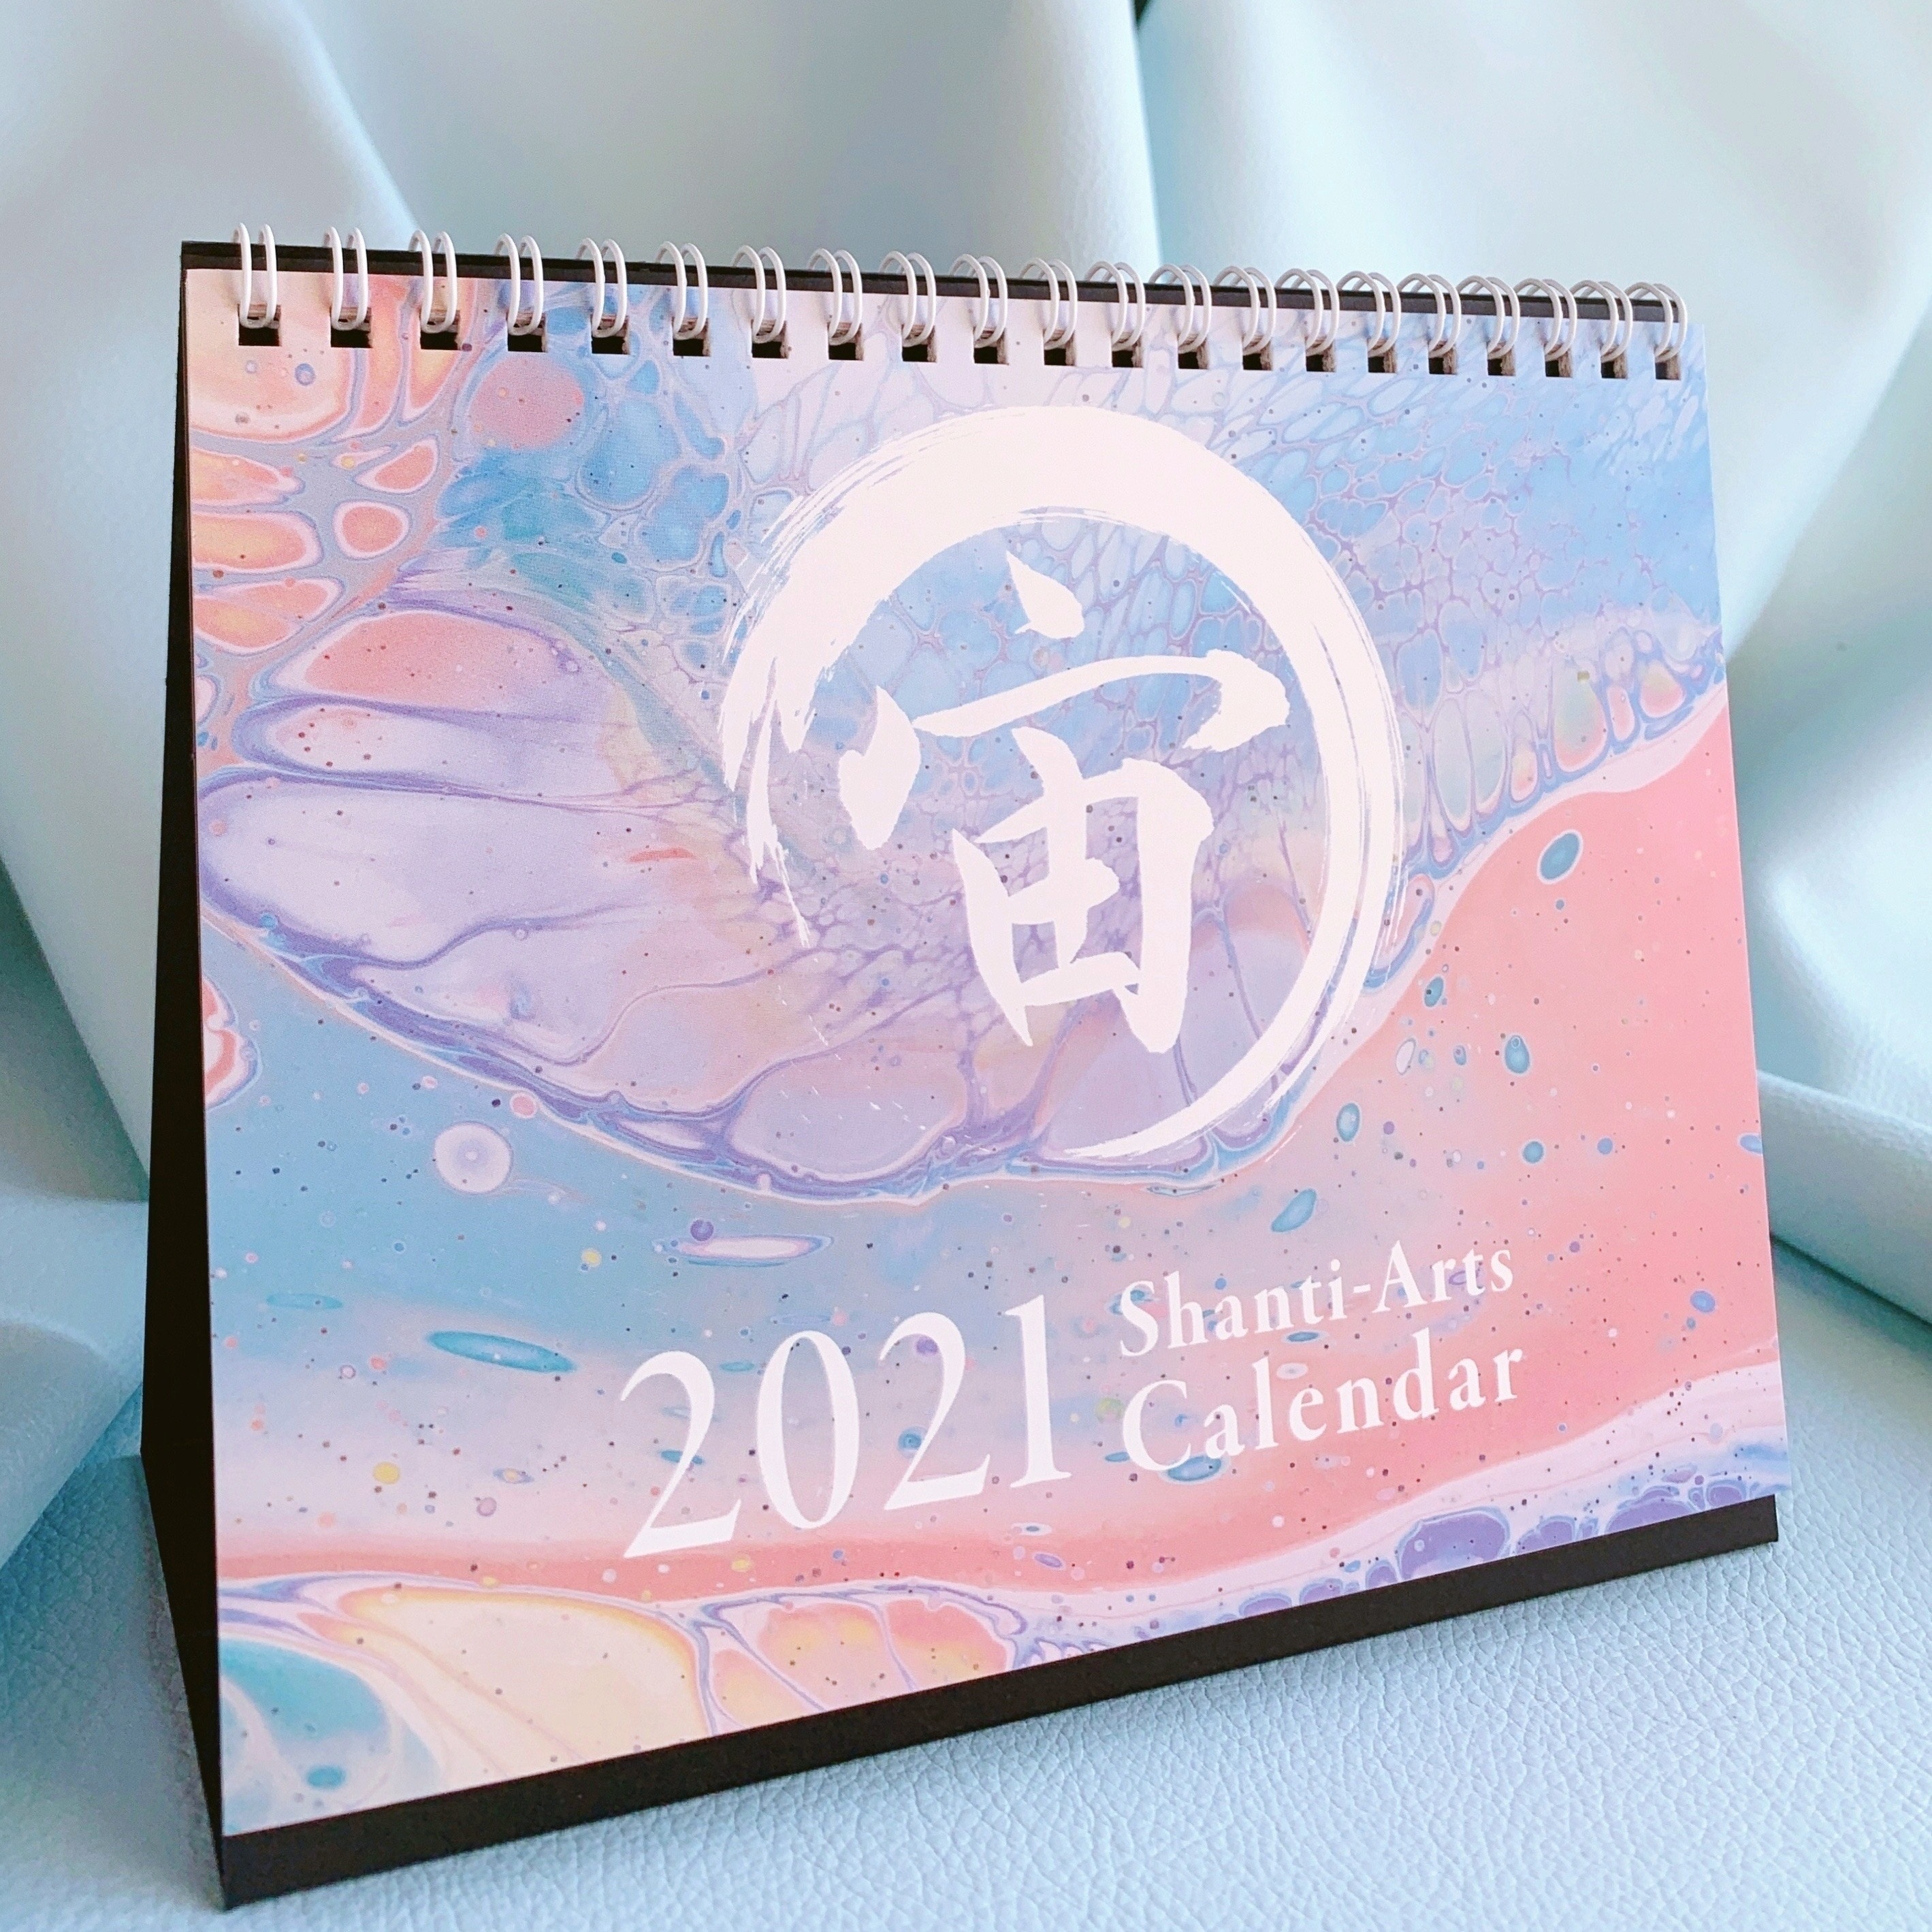 2021 Shanti-Arts Calendar好評販売中♡2021年を優しく穏やかに過ごすために